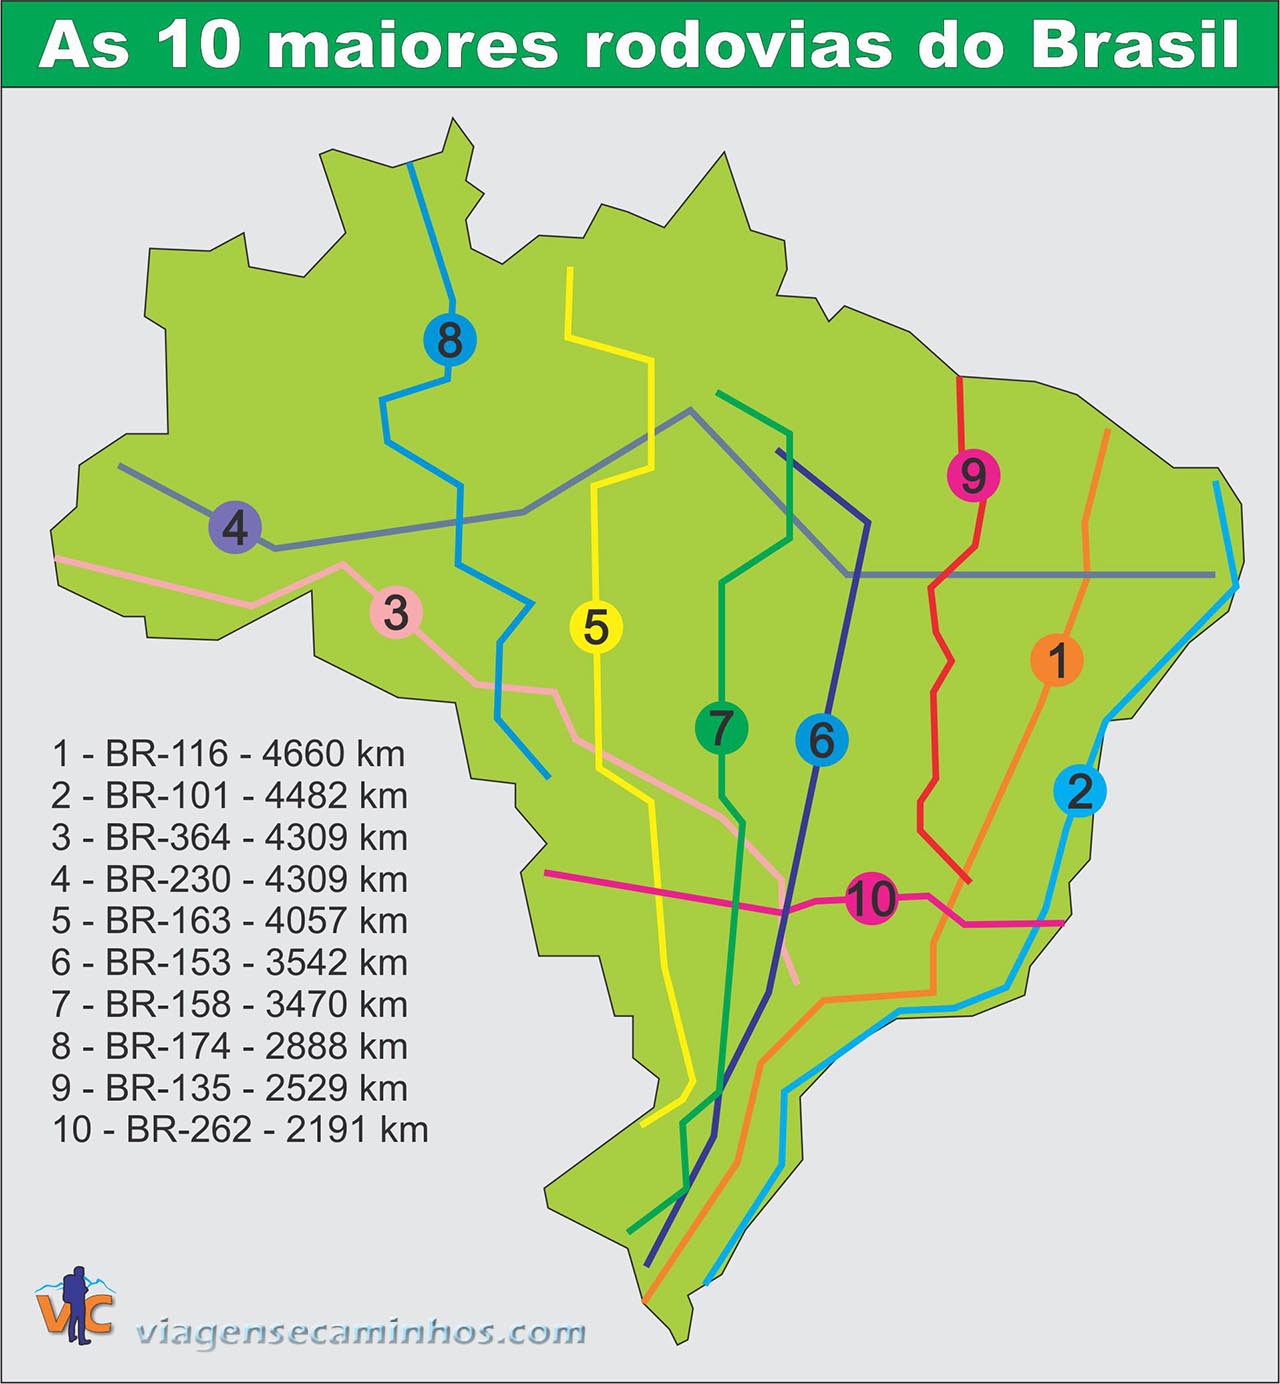 As 10 maiores rodovias do Brasil